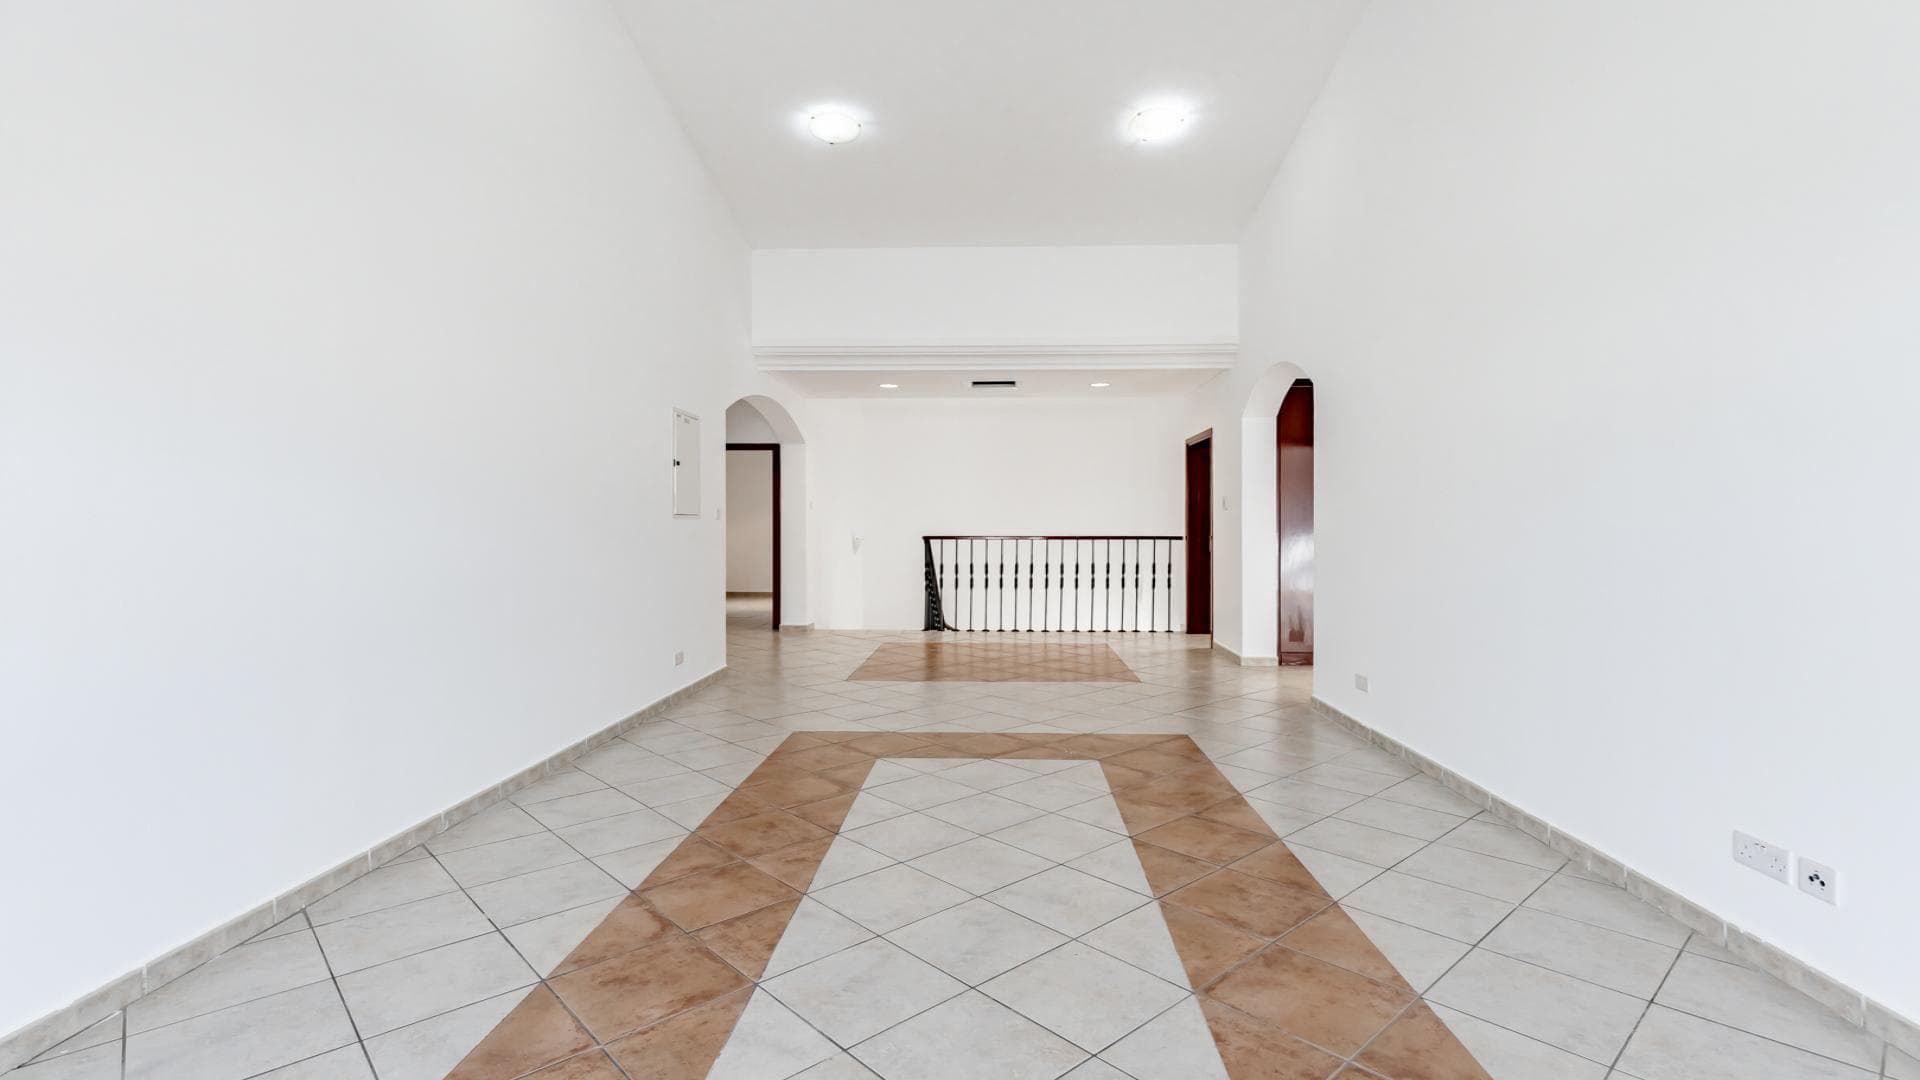 5 Bedroom Villa For Rent Al Thamam 36 Lp39013 A865b4c39d14700.jpg